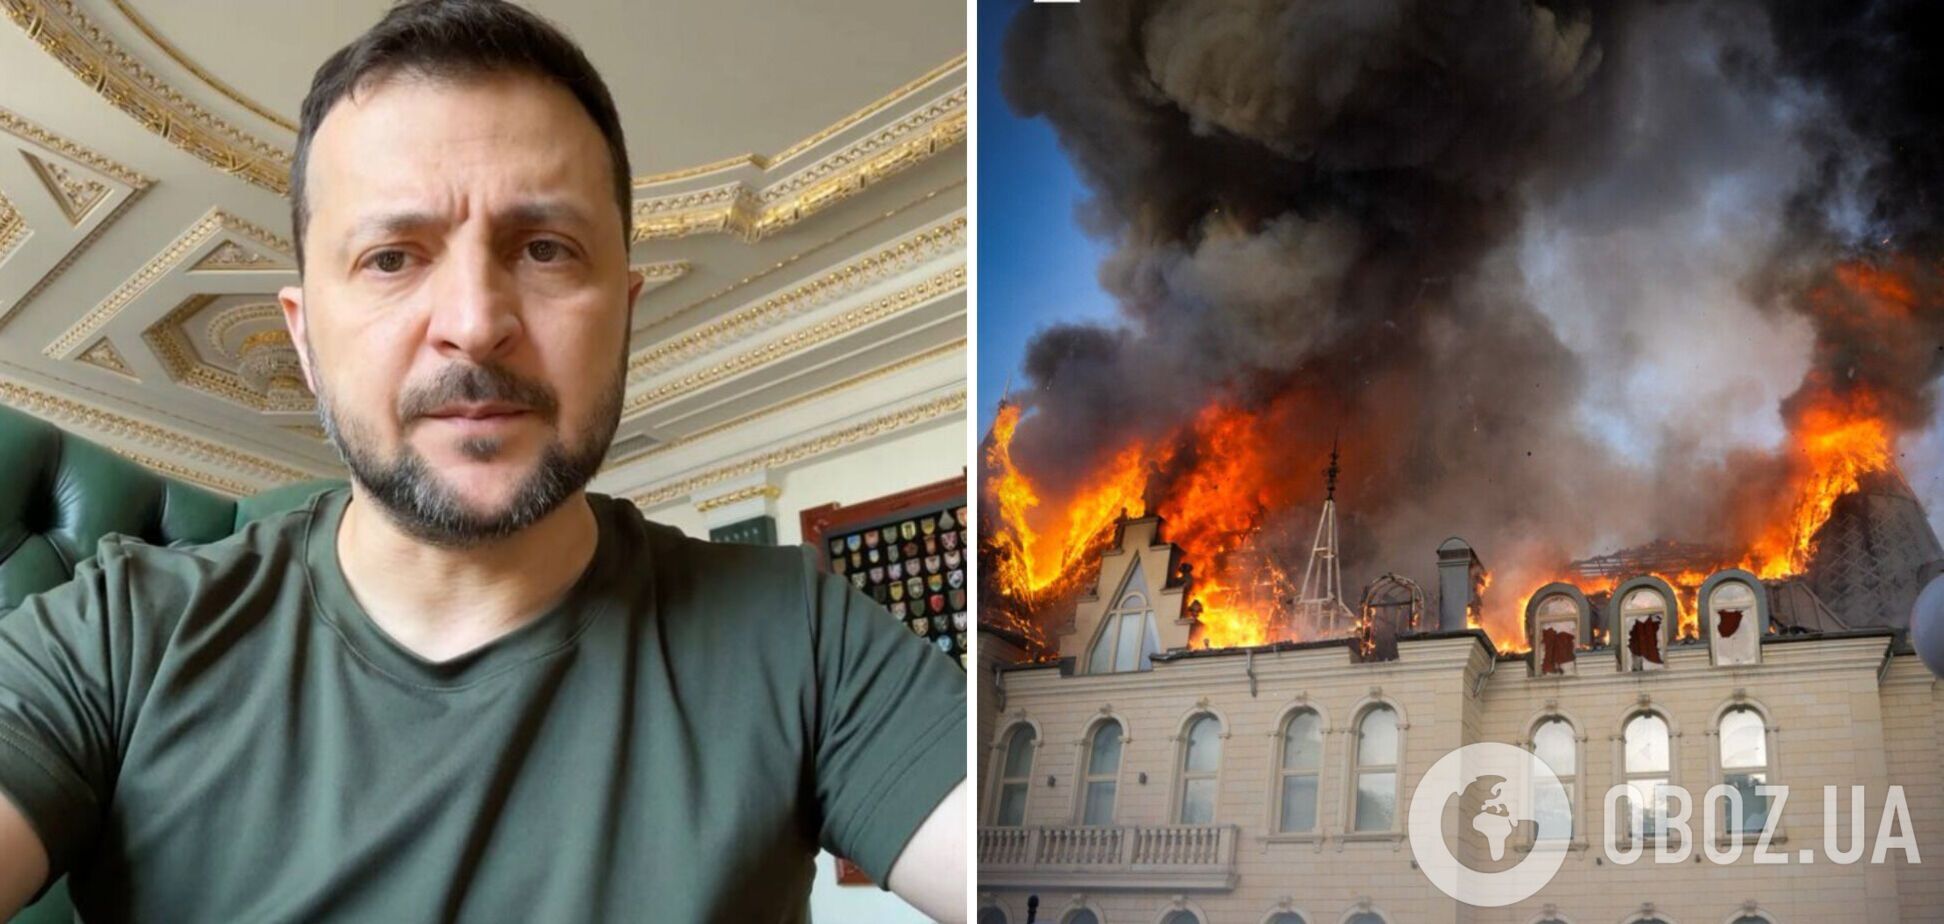 'Всем оказывается помощь': Зеленский рассказал о ситуации в Одессе после ракетной атаки россиян. Видео